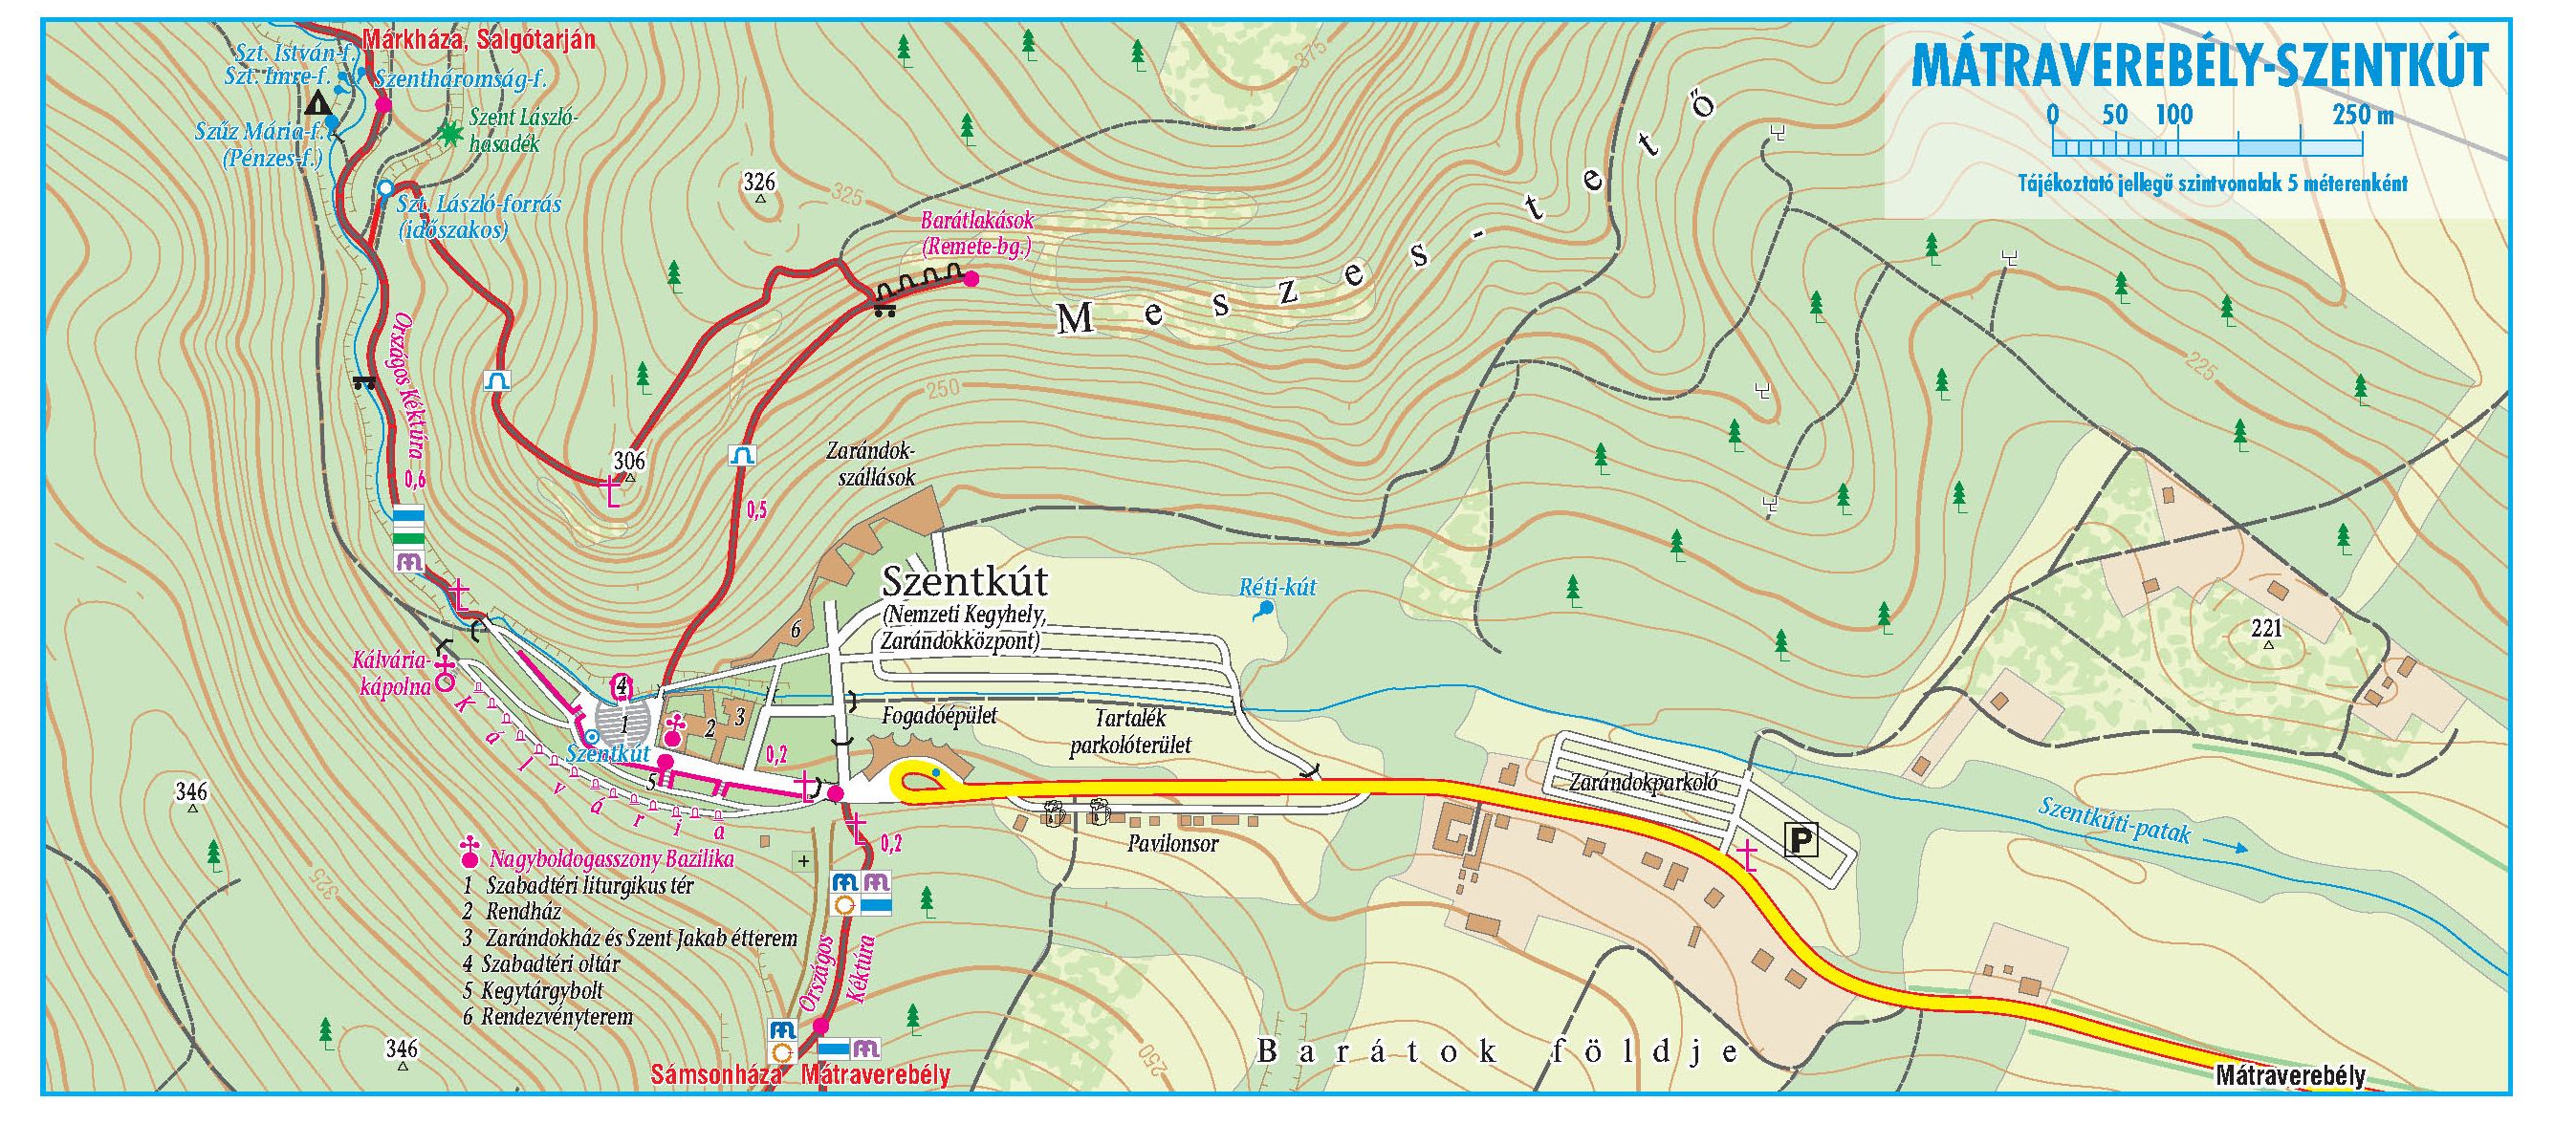 Cserhát: sample map Szentkút